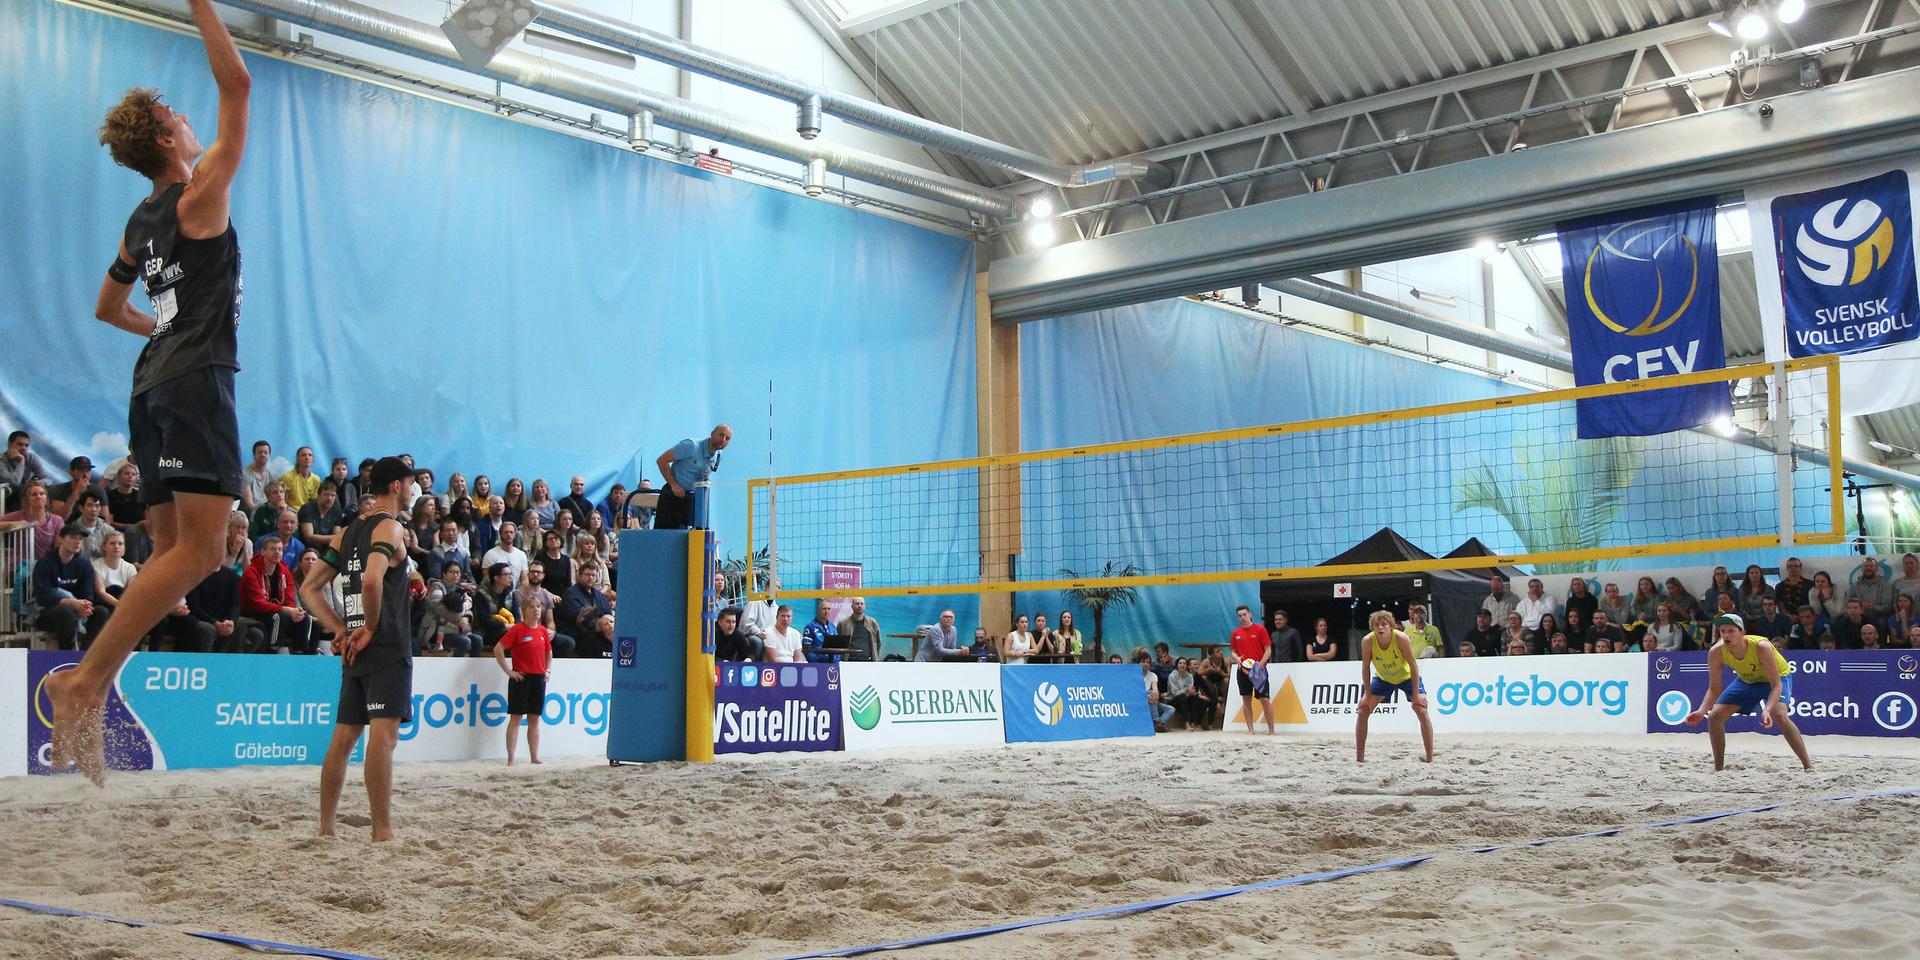 I april hålls för första gången världstour-tävling i beachvolleyboll i Sverige. Tävlingarna äger rum i Beach center i Kviberg i Göteborg. 